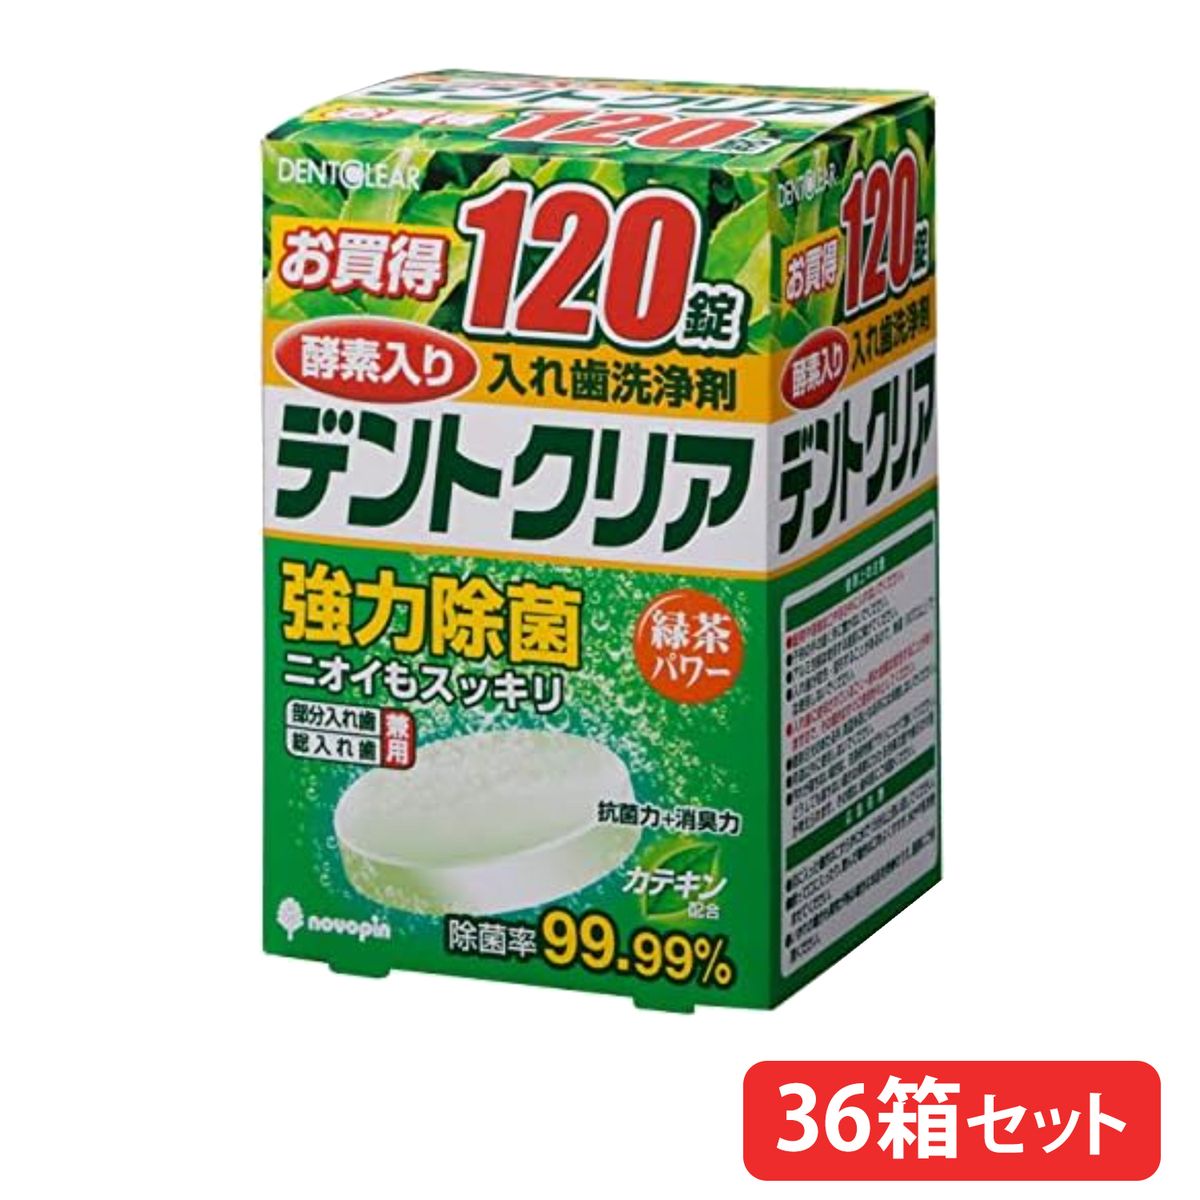 【36箱まとめ買い】入れ歯洗浄剤 デントクリア 緑茶パワー 120錠